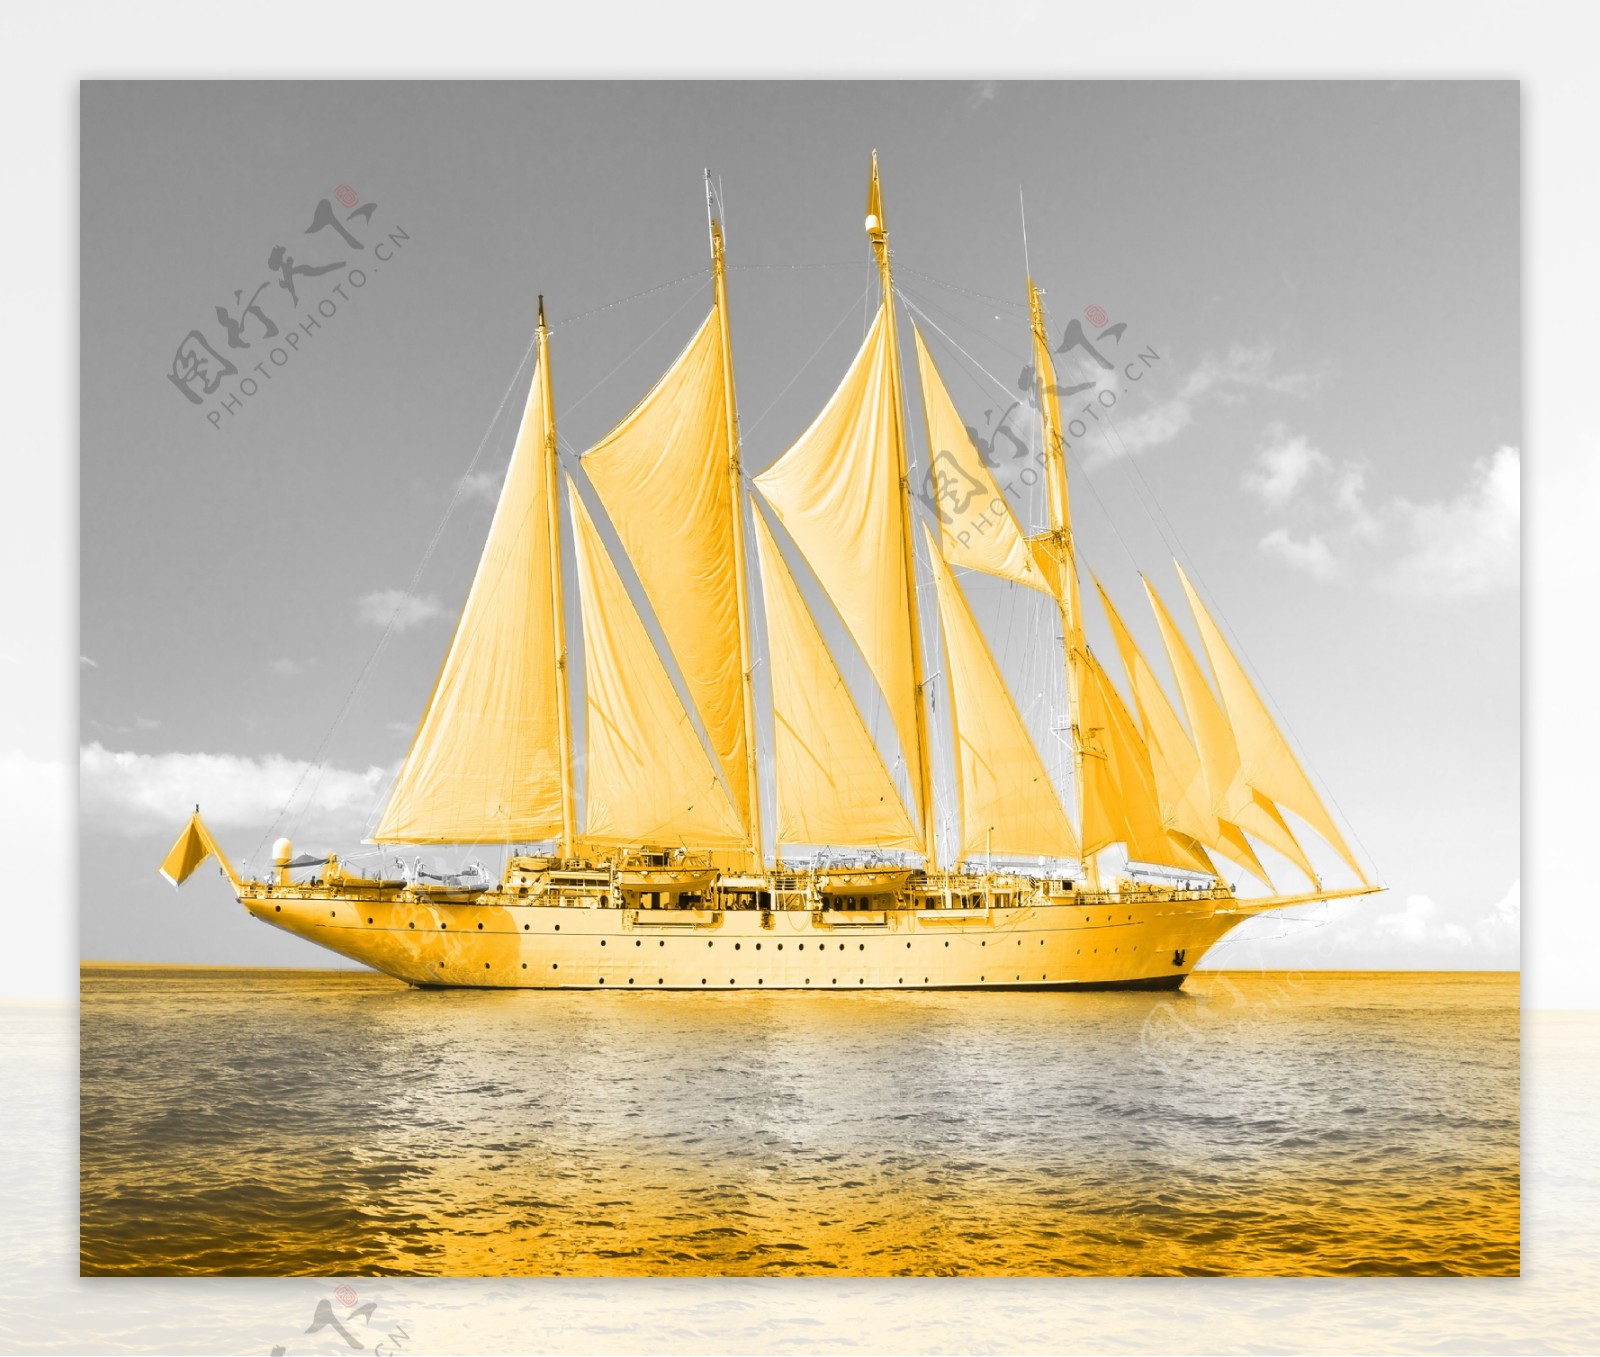 金色帆船